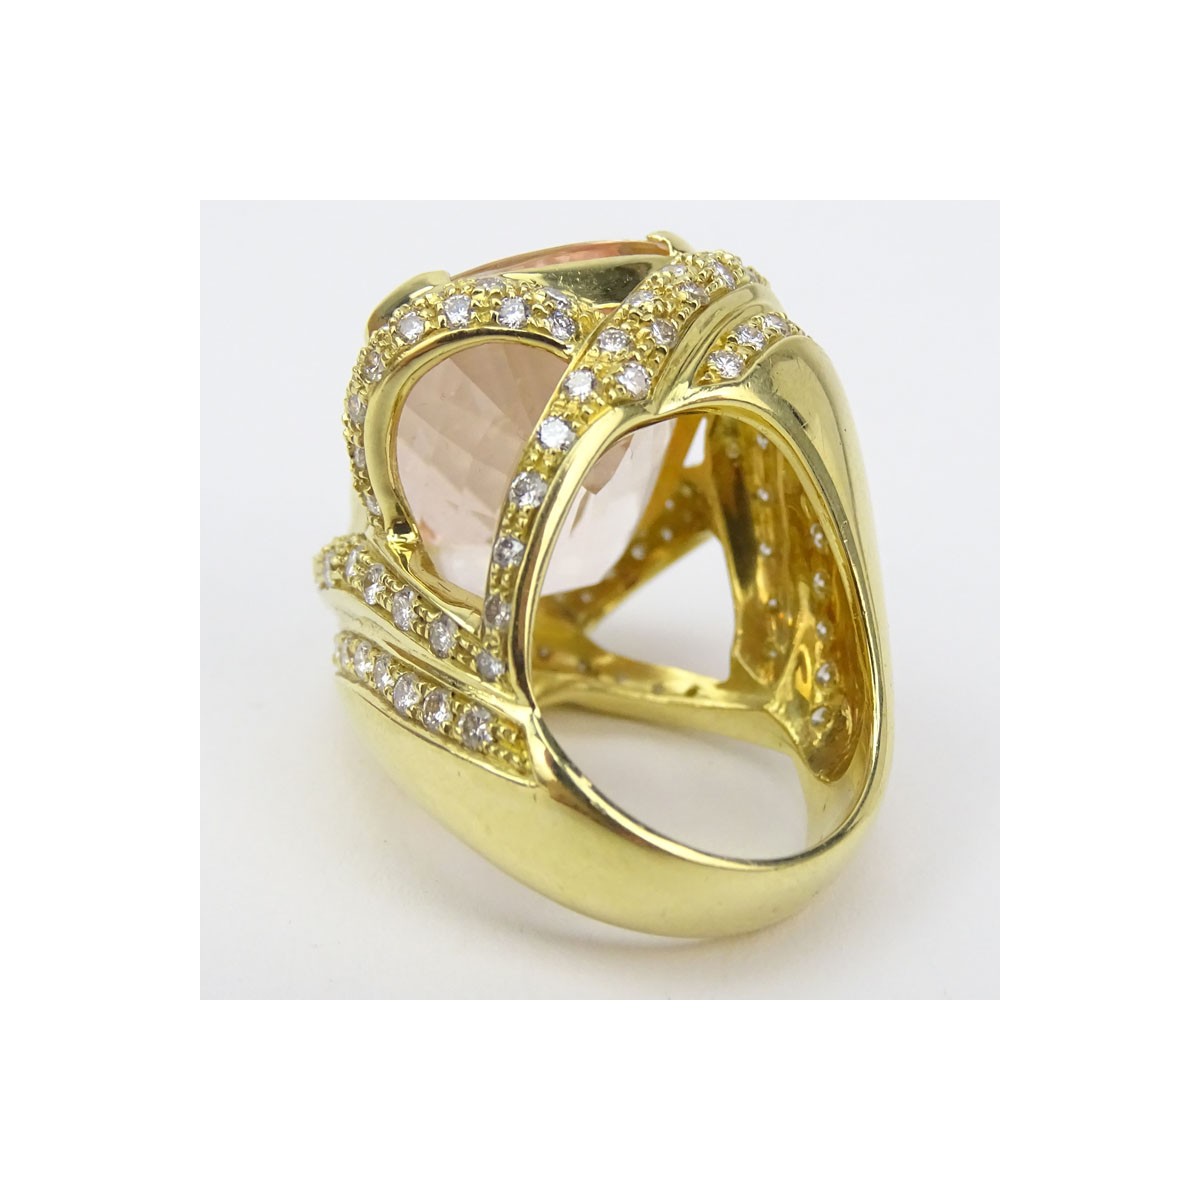 Kunzite, Diamond and 18K Gold Ring